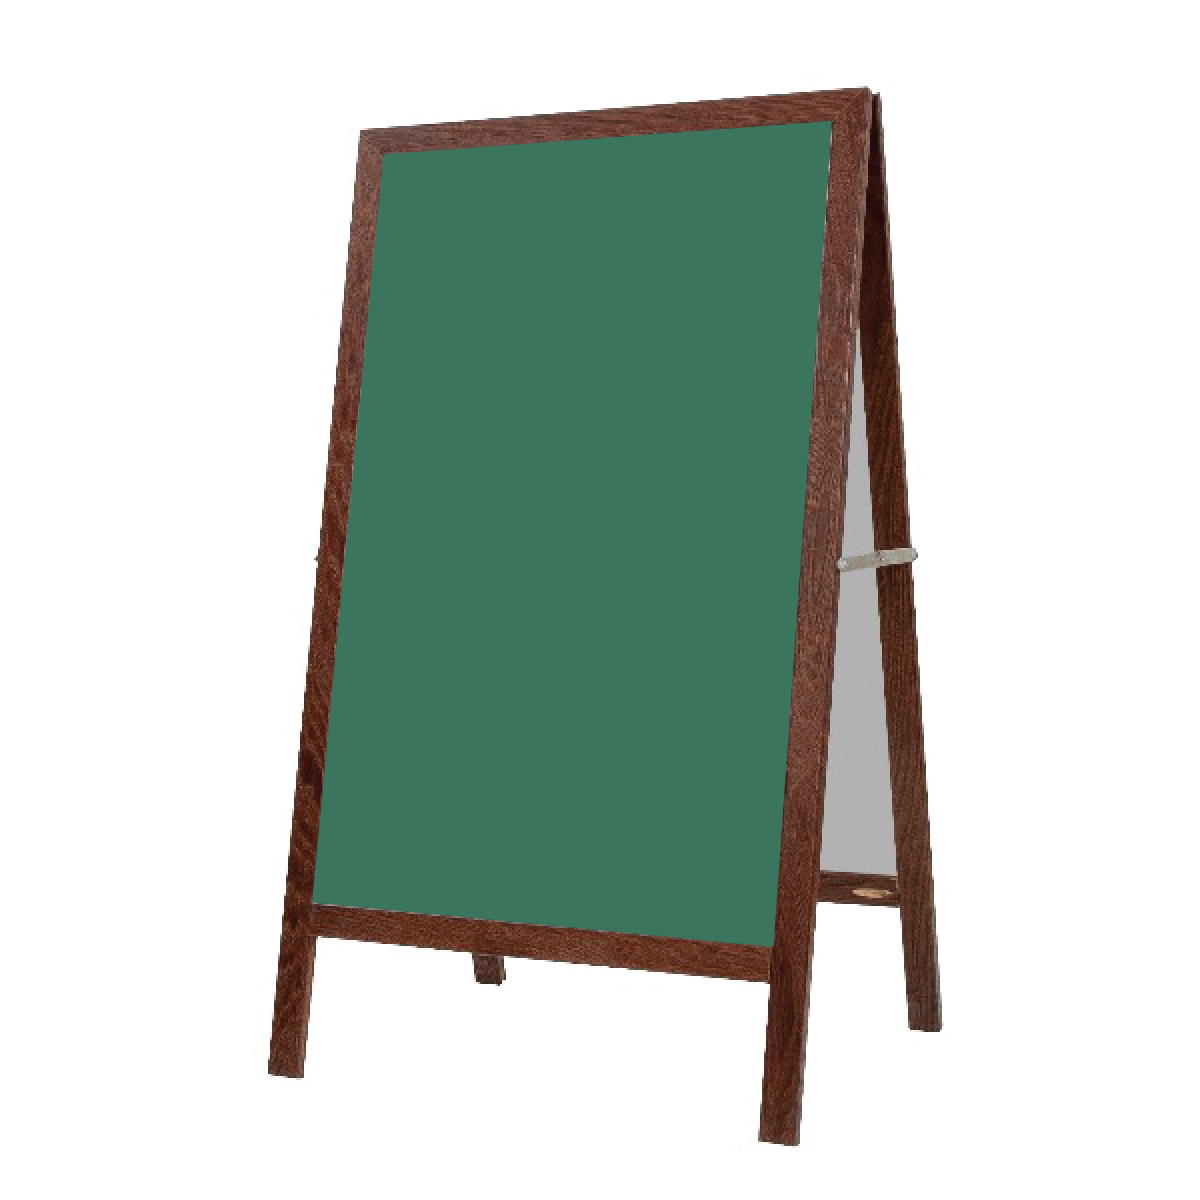 Walnut Oak A-Frame | Green Ceramic Steel Chalkboard